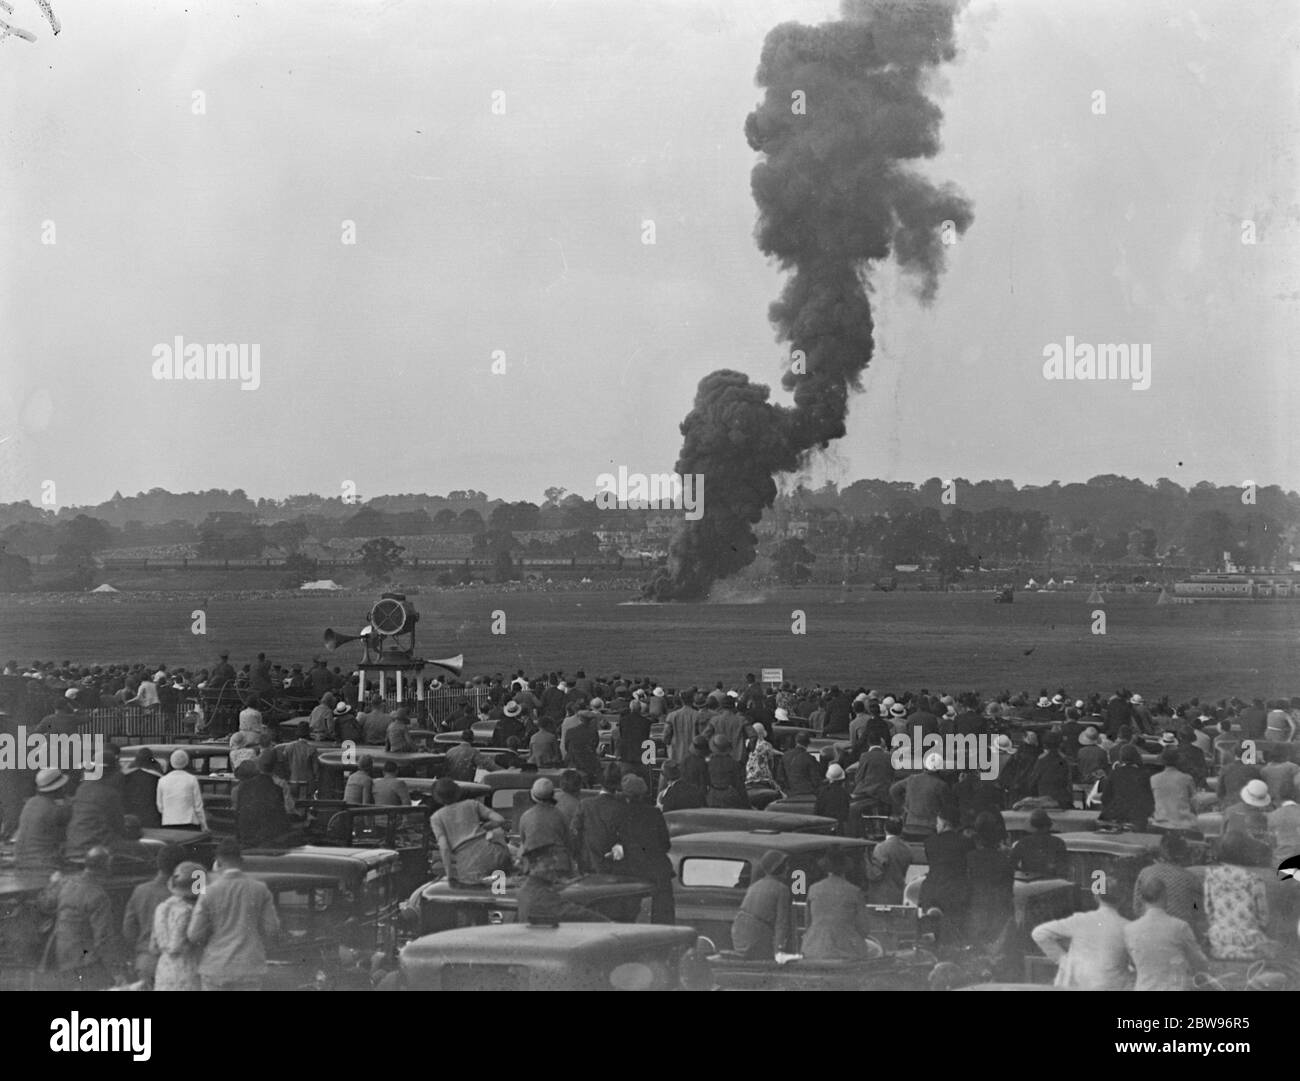 Luftschiff auf Hendon Air Pageant abgeschossen. Ein Dummy-Luftschiff wurde in Flammen auf der Royal Air Force Aerial Display am Hendon Aerodrome, London. Die Luftschiffverbrennung nach dem Zusammenprall auf den Boden in Flammen auf den Festzug . 25 Juni 1932 Stockfoto